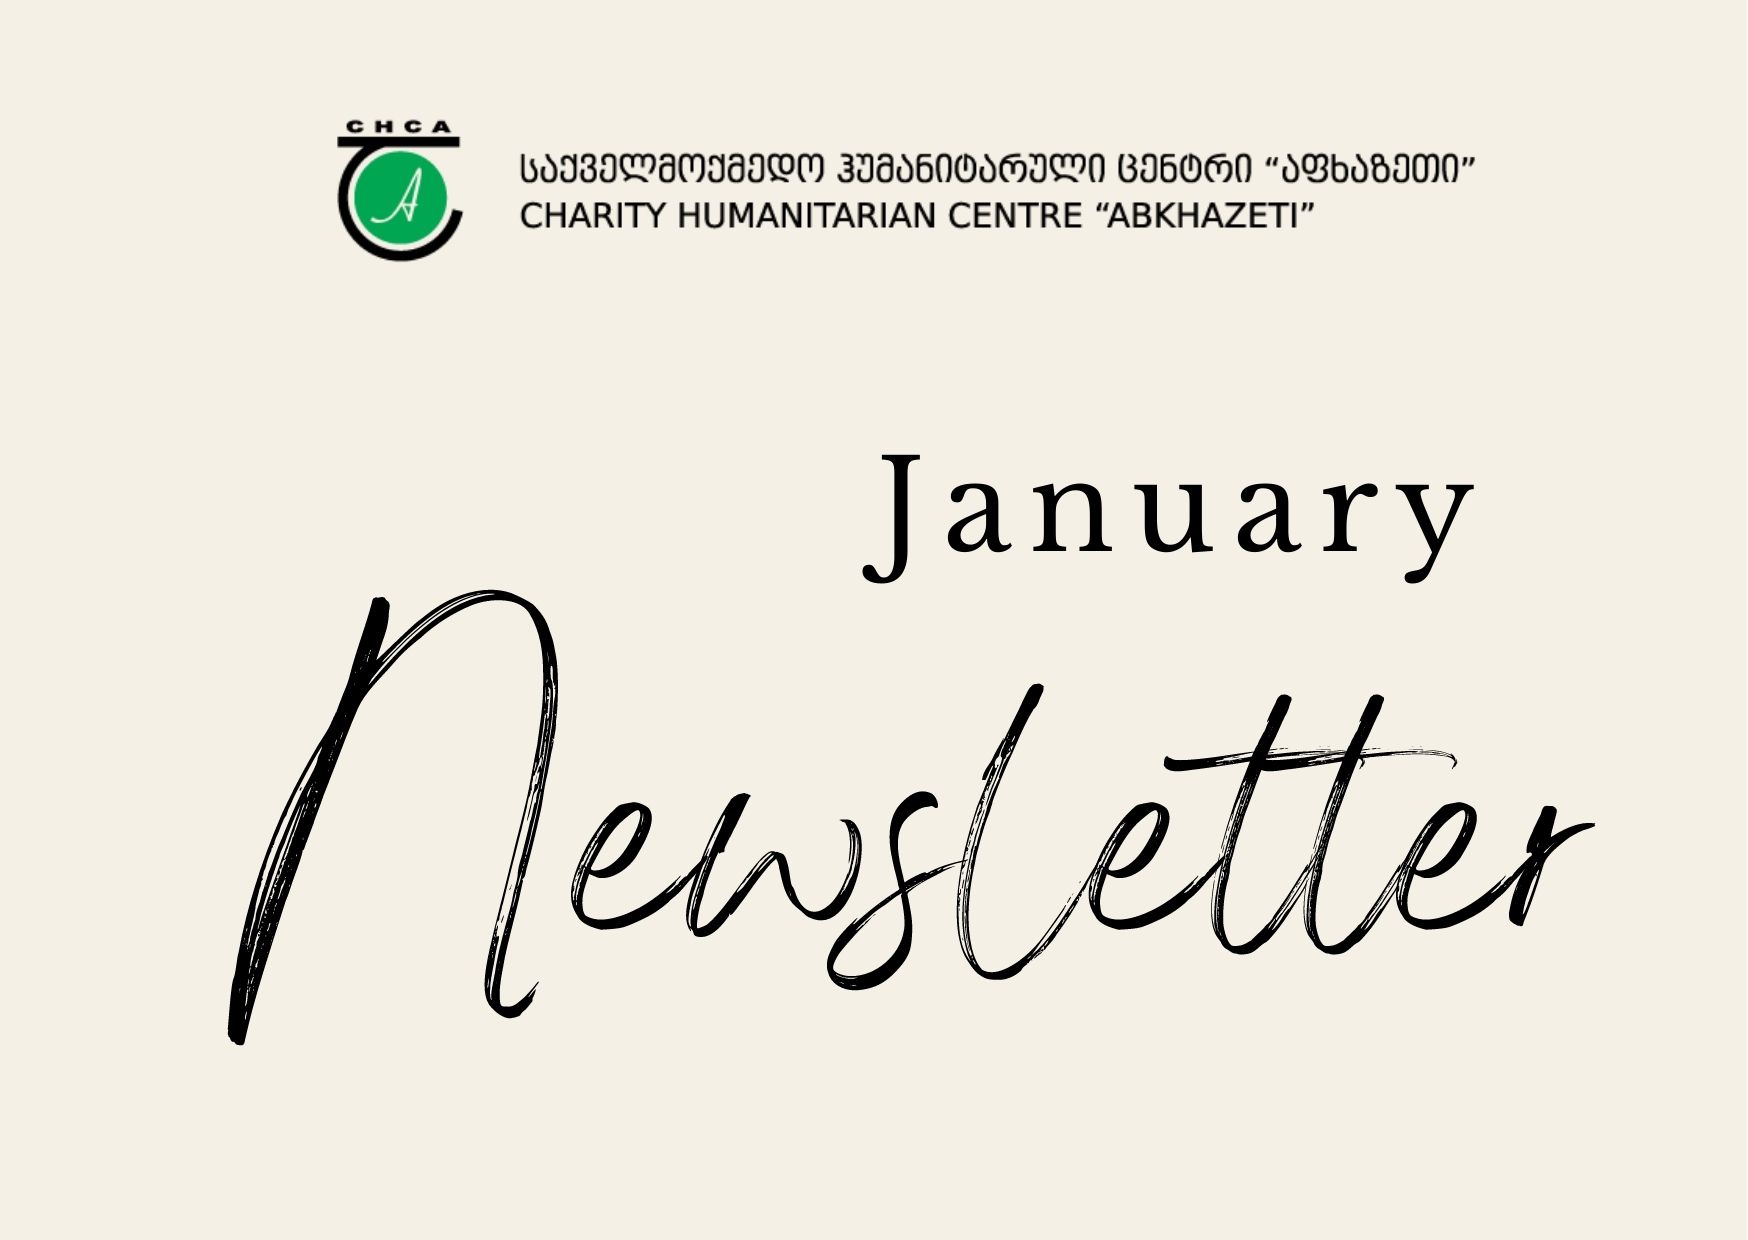 Newsletter - January 2022